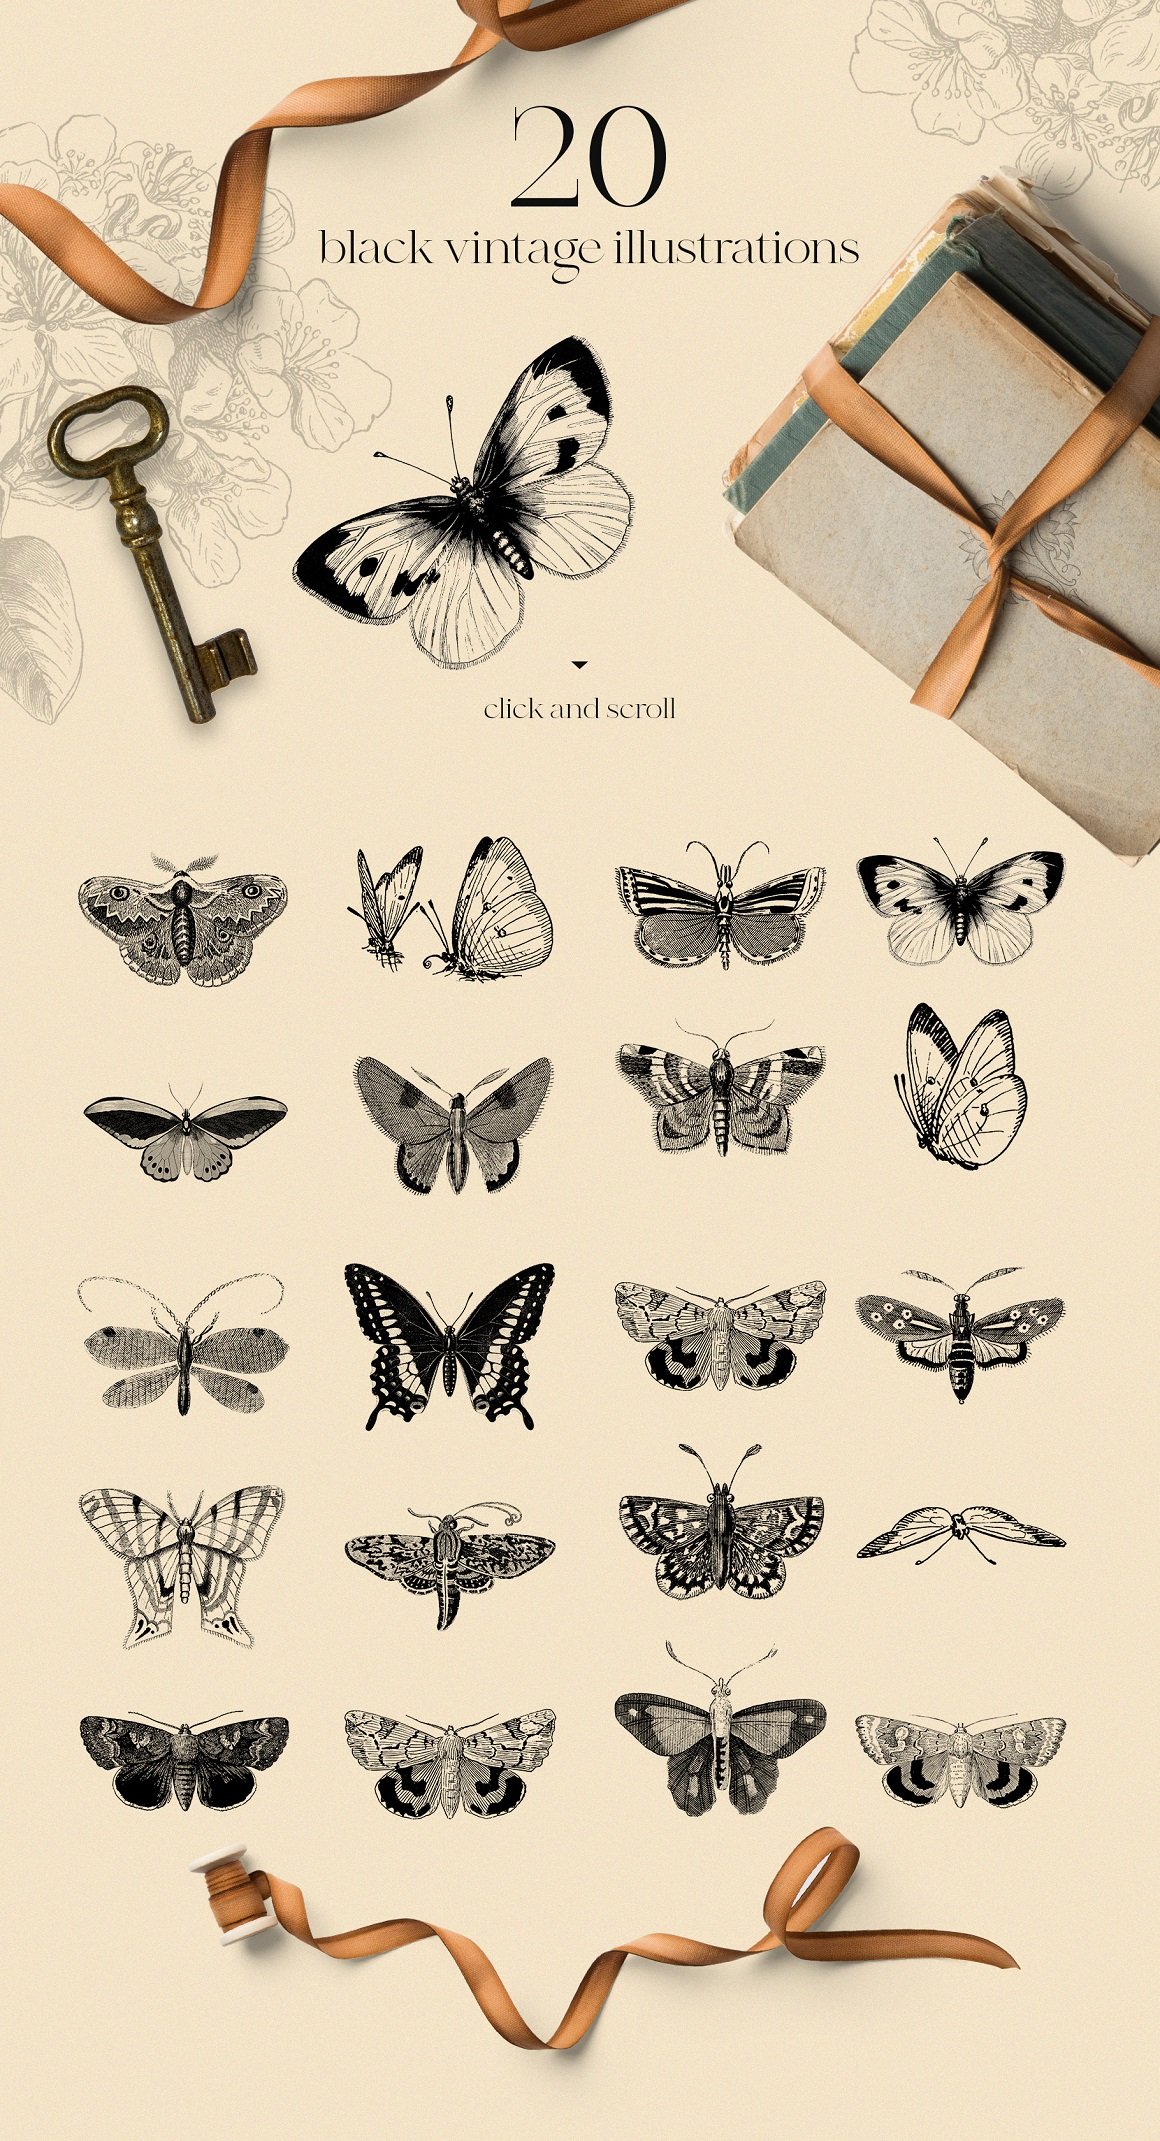 Card Making butterflies dragonflies bees -Junk Journal Etymology Scrapbook paper DIY Mixed Media moths